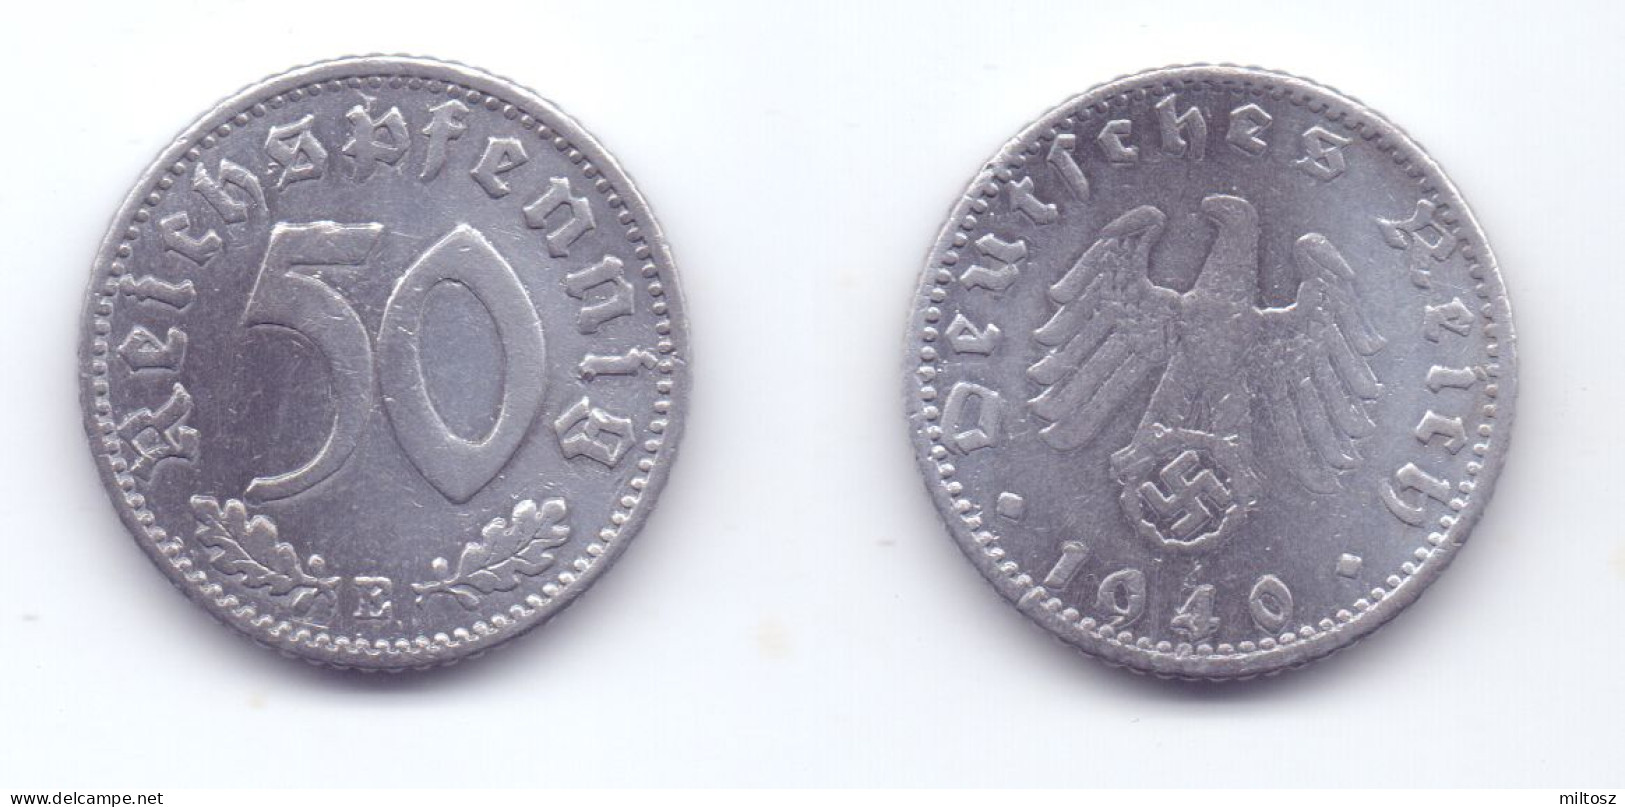 Germany 50 Reichspfennig 1940 E WWII Issue - 50 Reichspfennig